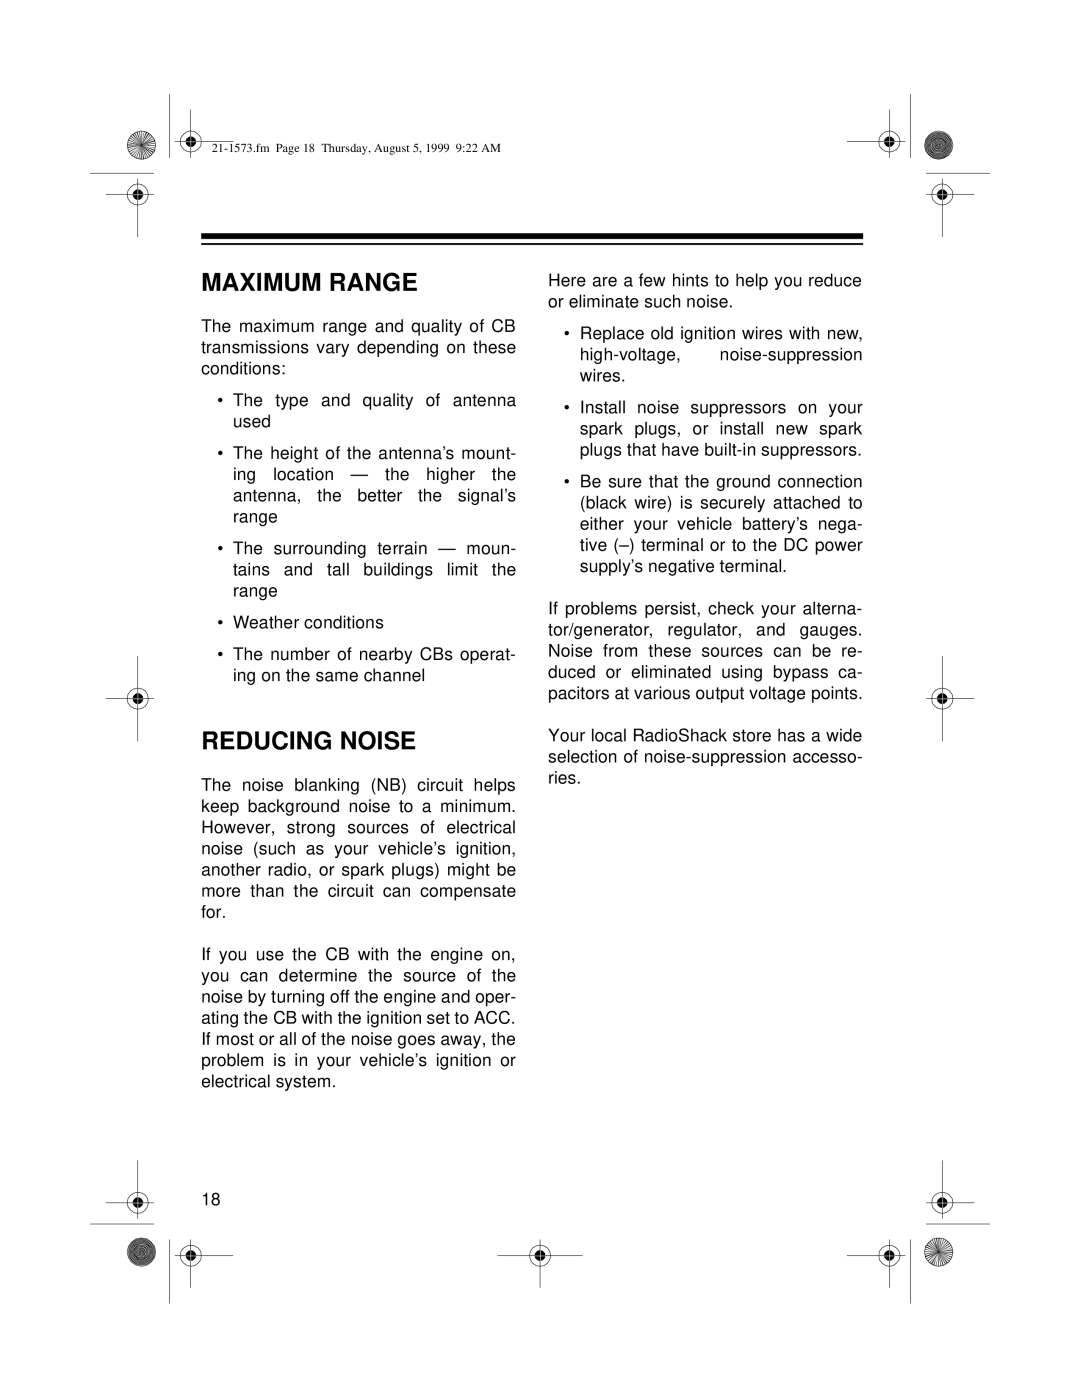 Samsung TRC-445 owner manual Maximum Range, Reducing Noise 